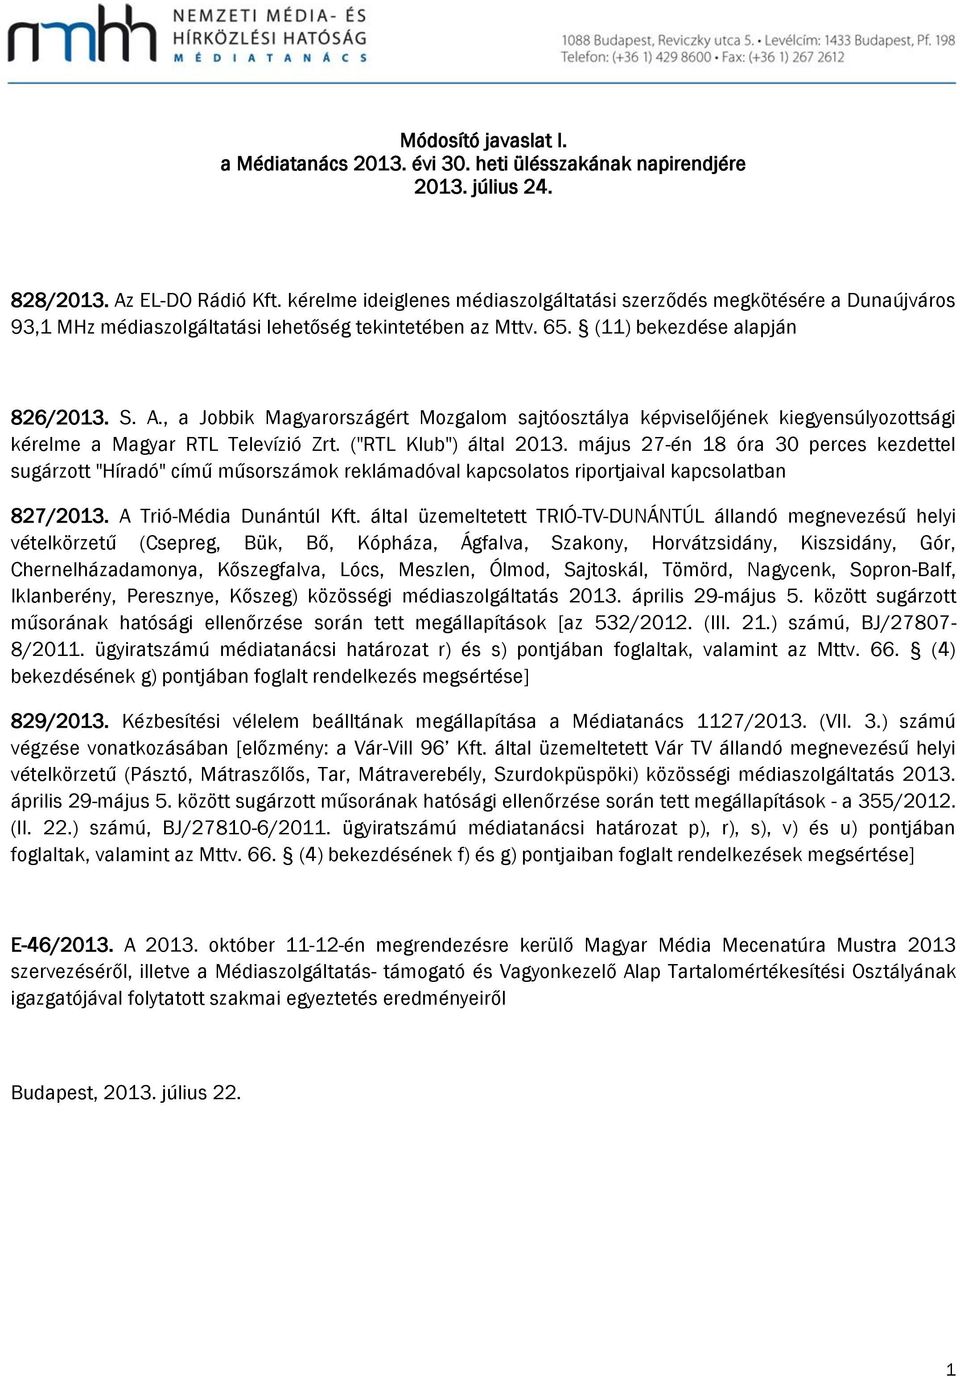 , a Jobbik Magyarországért Mozgalom sajtóosztálya képviselőjének kiegyensúlyozottsági kérelme a Magyar RTL Televízió Zrt. ("RTL Klub") által 2013.